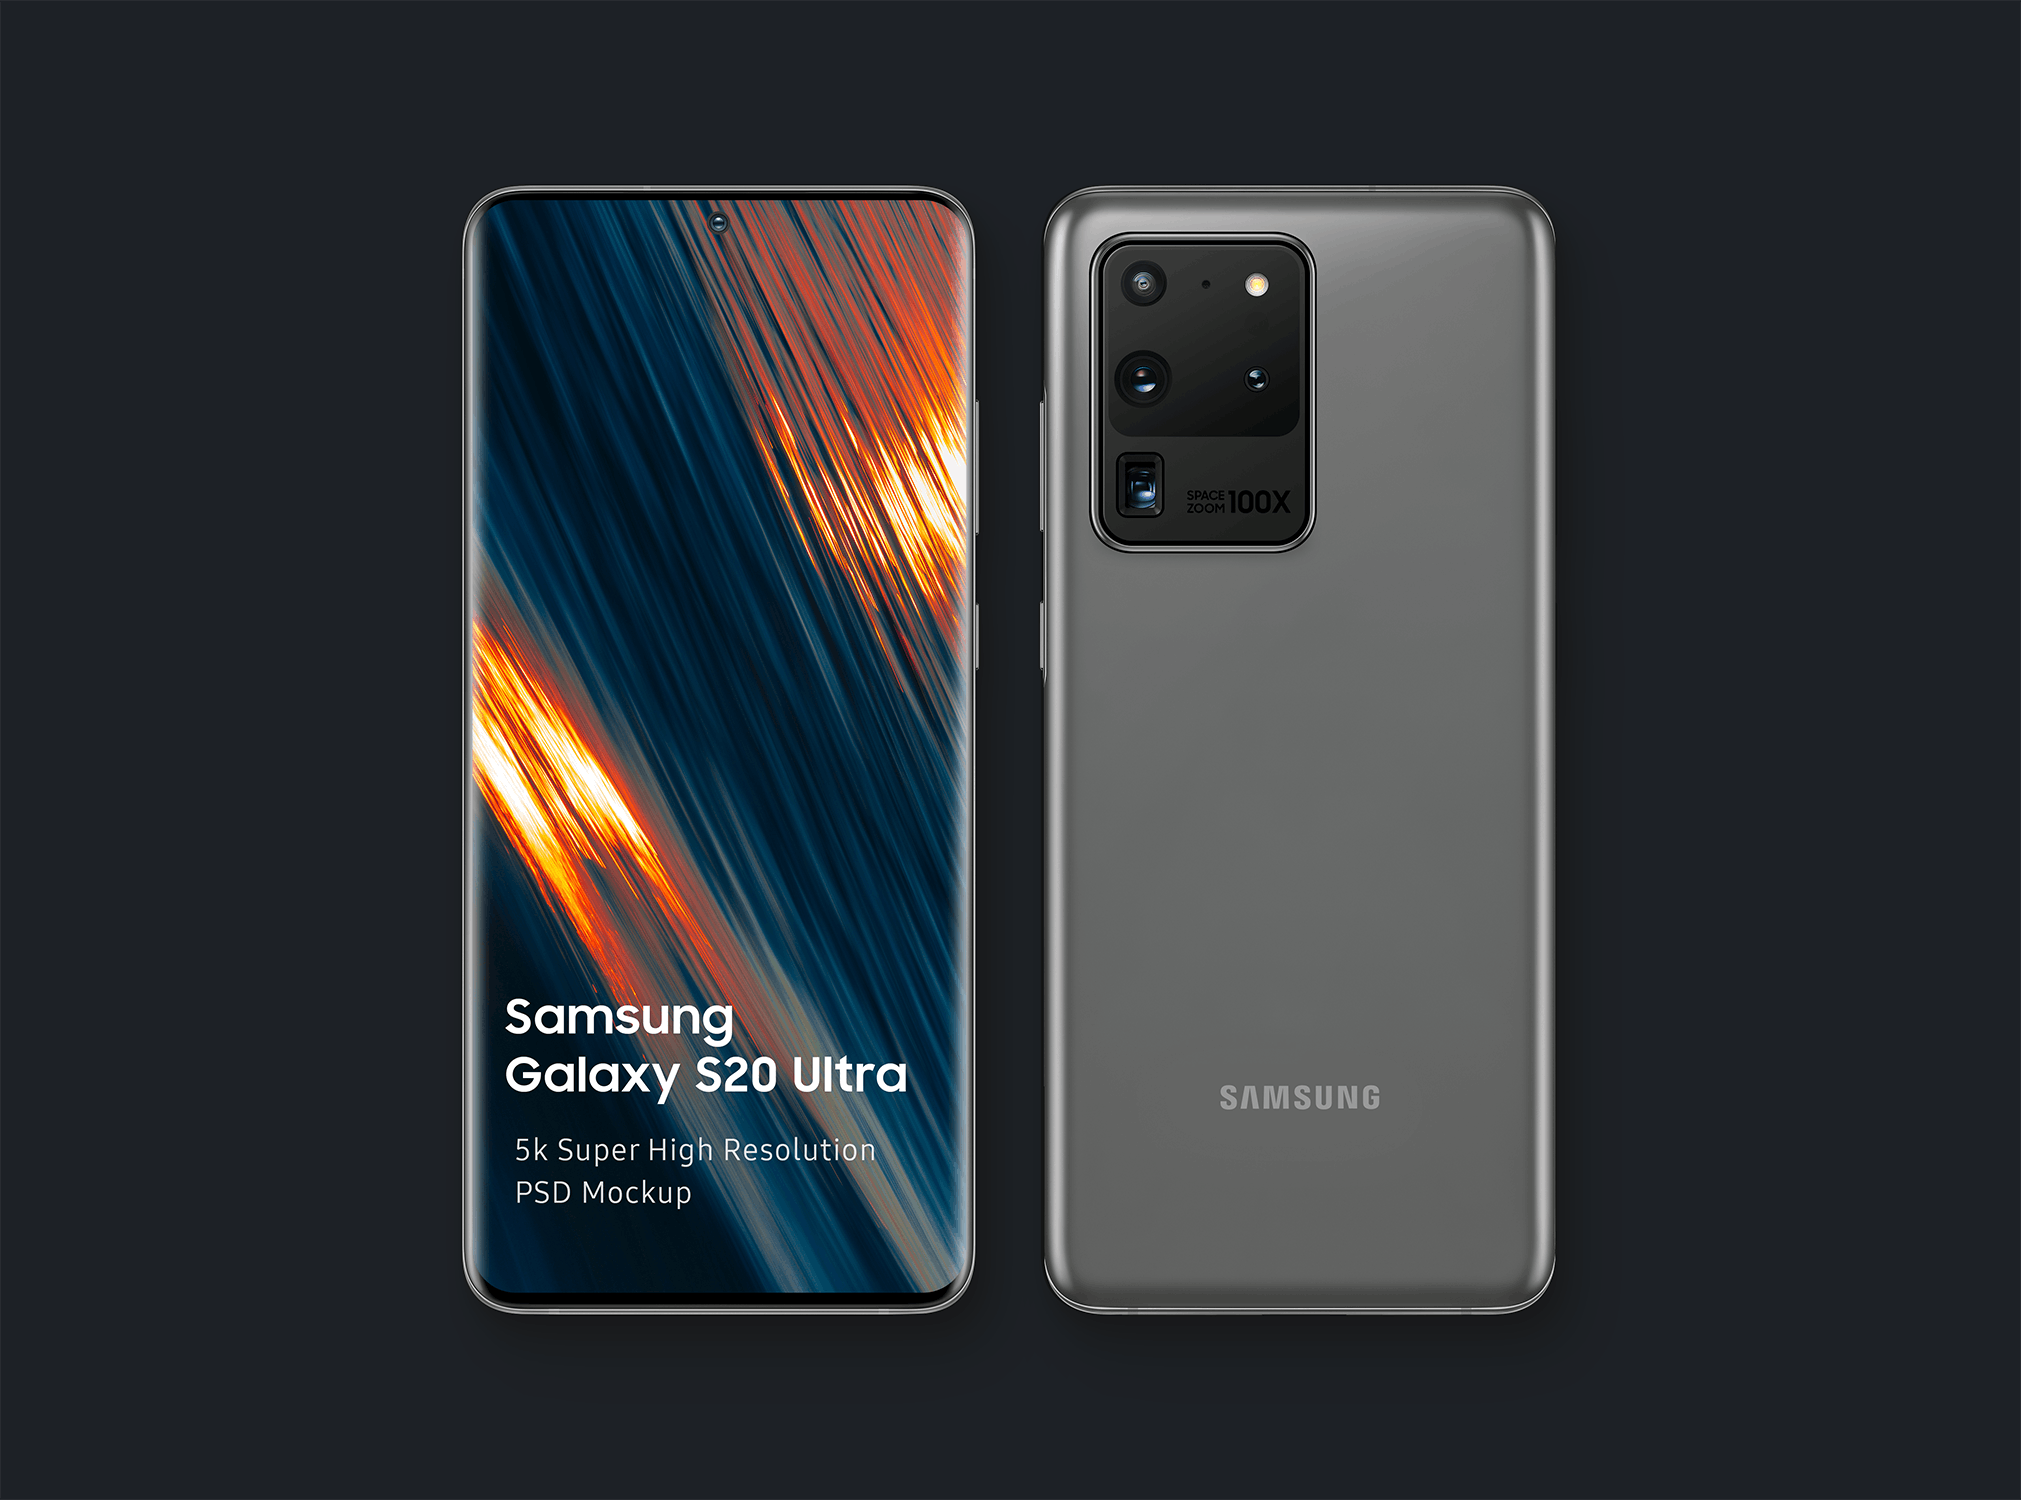 三星智能手机Galaxy S20 Ultra屏幕预览第一素材精选样机模板 Samsung Galaxy S20 Ultra Mockup 1.0插图(7)